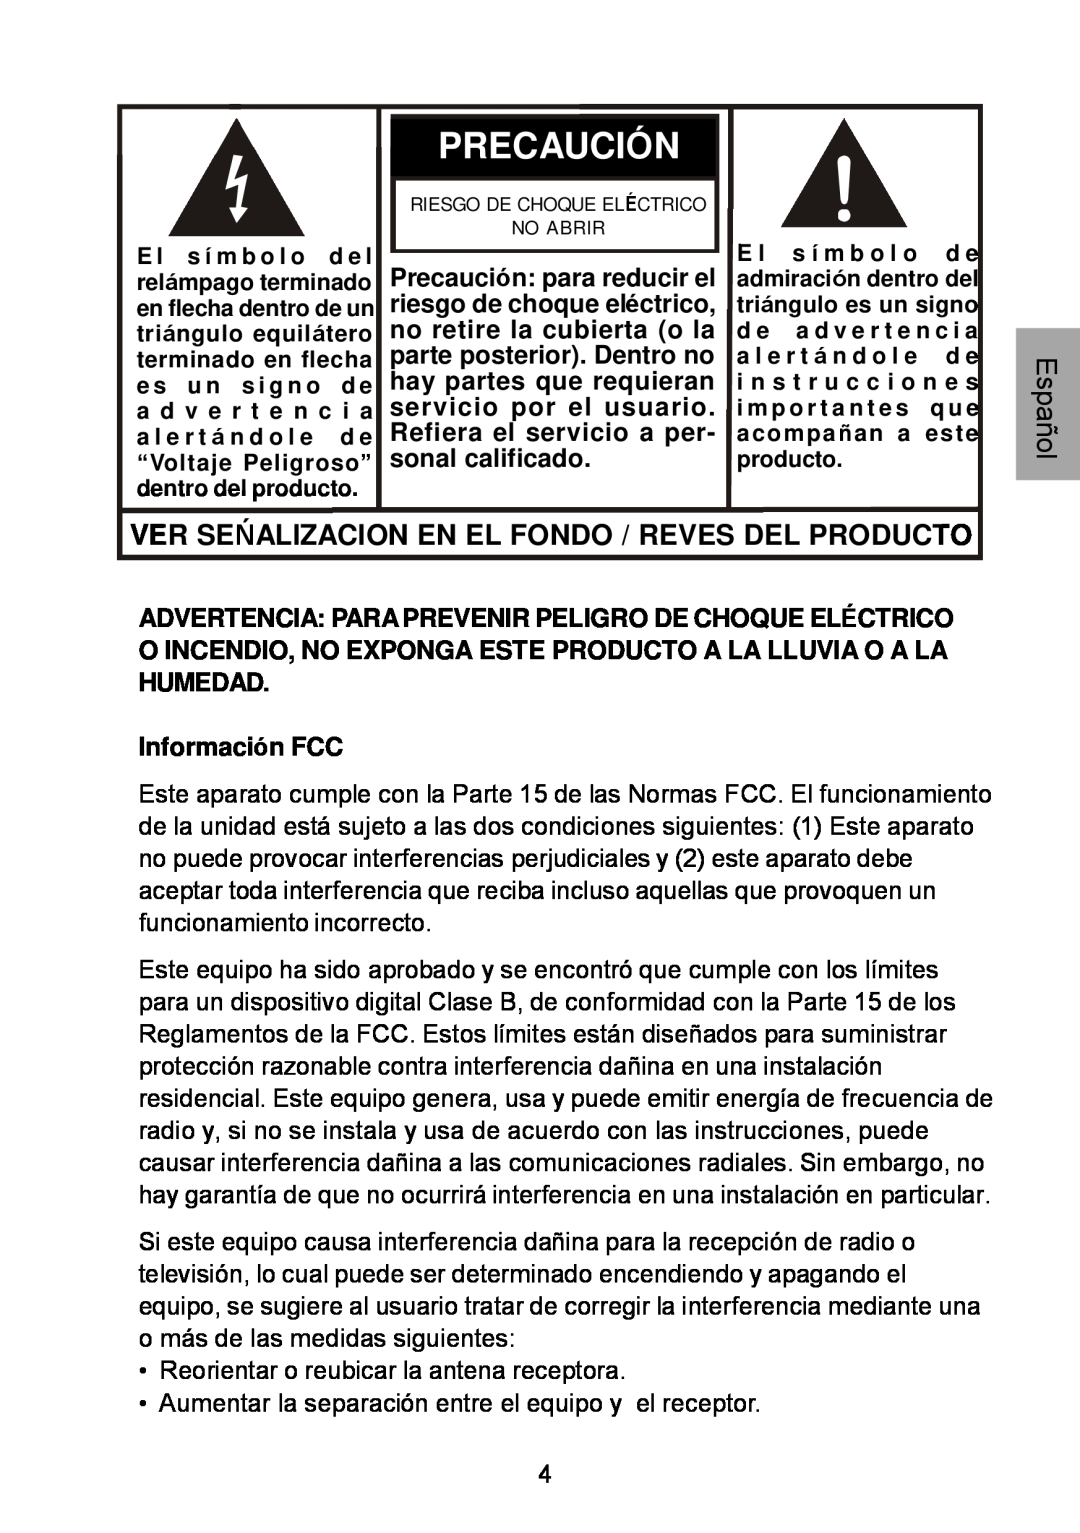 Audiovox D1929B manual Ver Seńalizacion Enel Fondo /Reves Del Producto, Precaución, Información FCC 